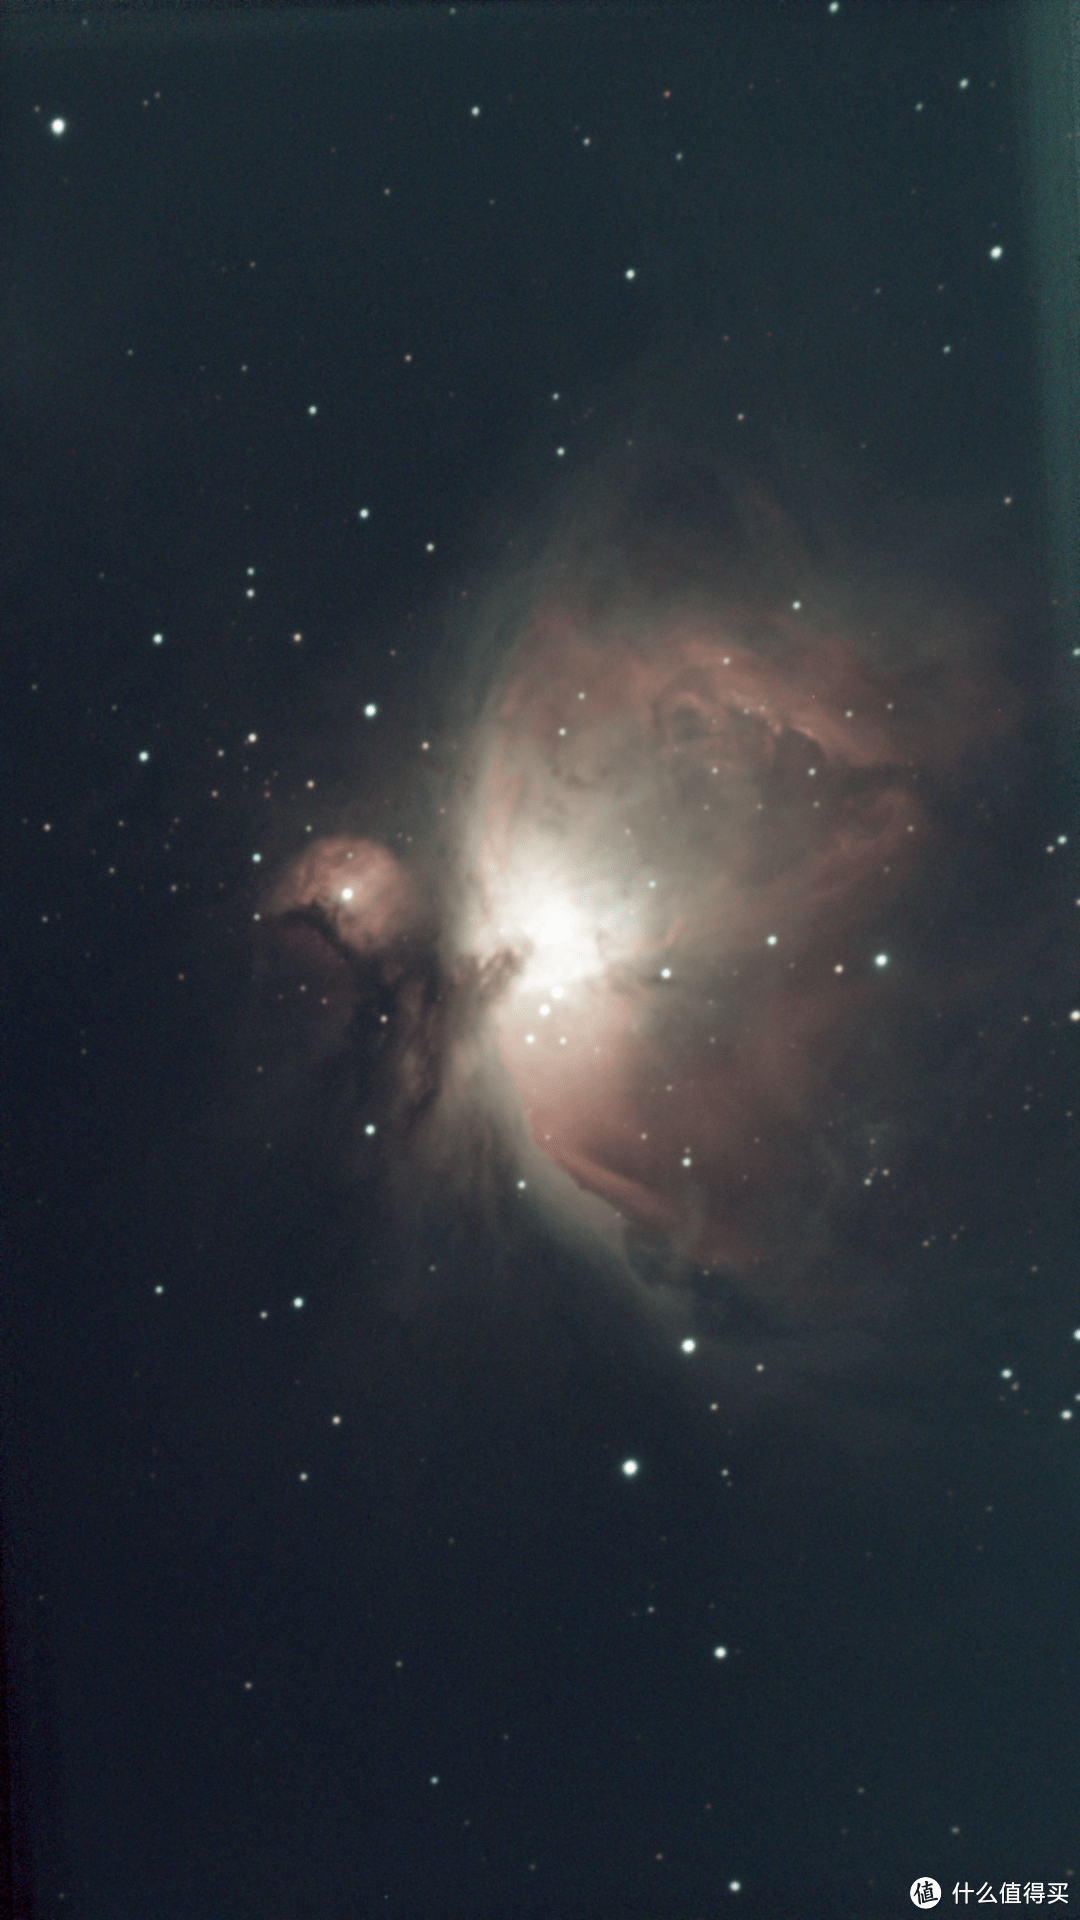 探索星空的全新方式：Seestar S50 智能天文望远镜上手体验